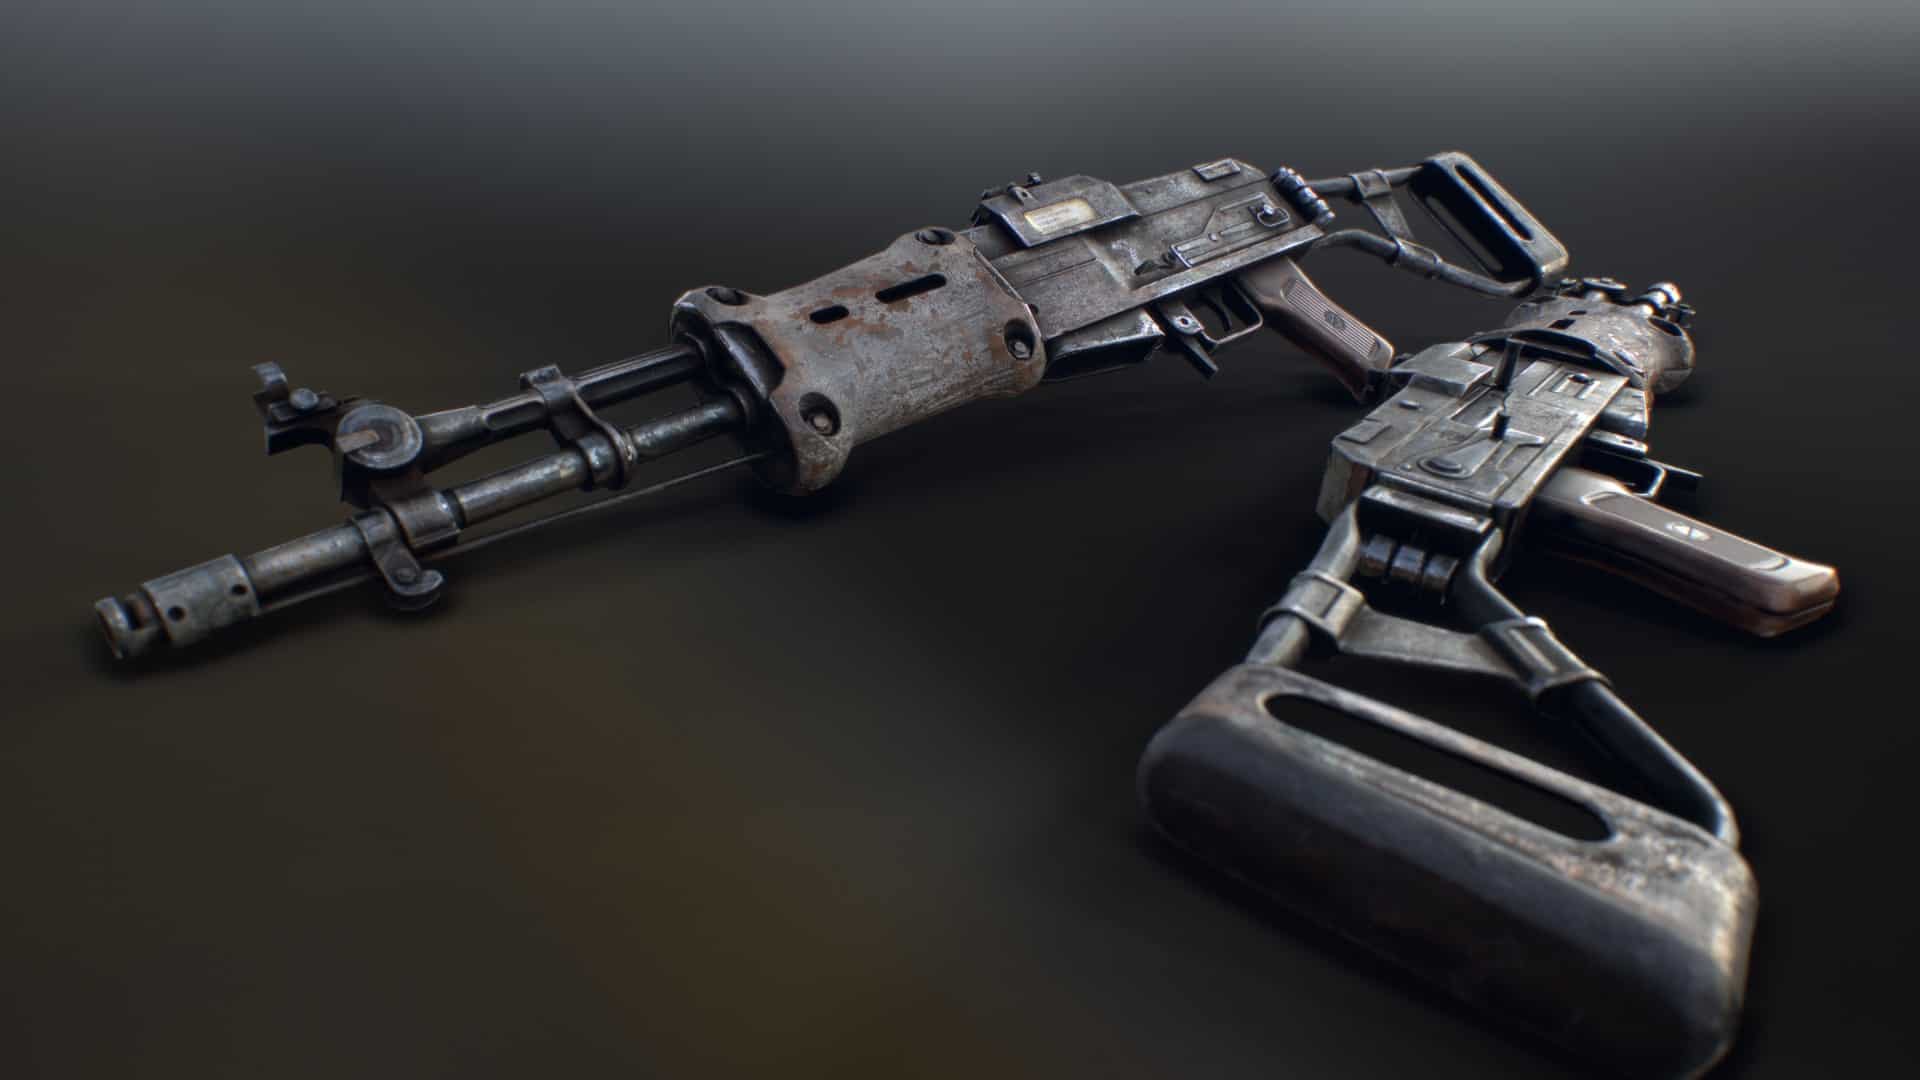 Fallout 4 r91 assault rifle от c1ph3rr фото 110